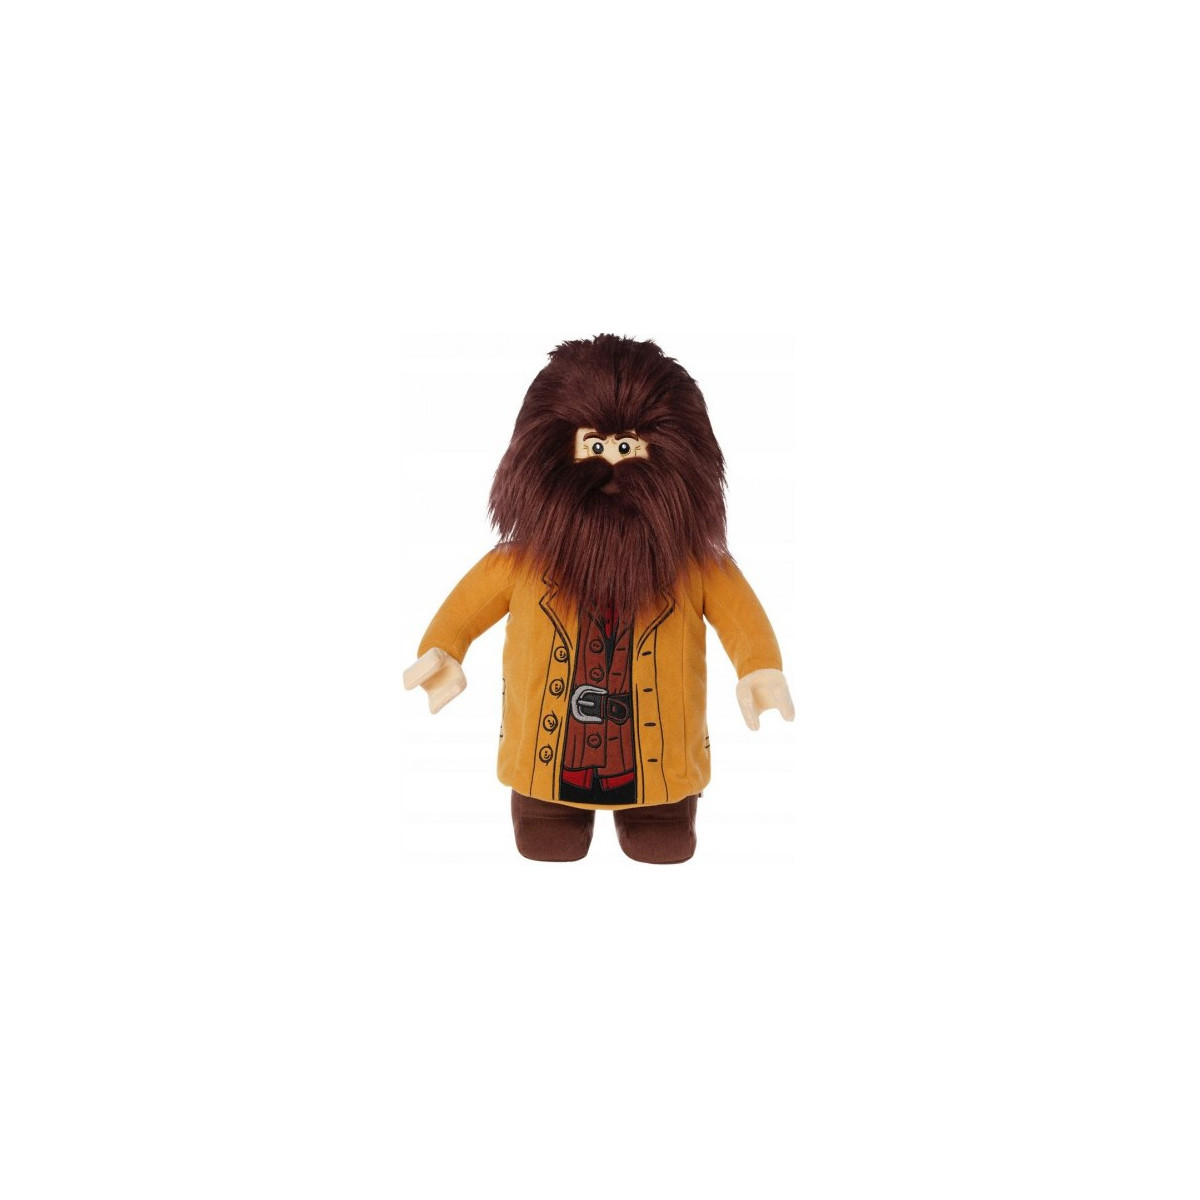 Lego 342820 - Harry Potter Hagrid™ Plush